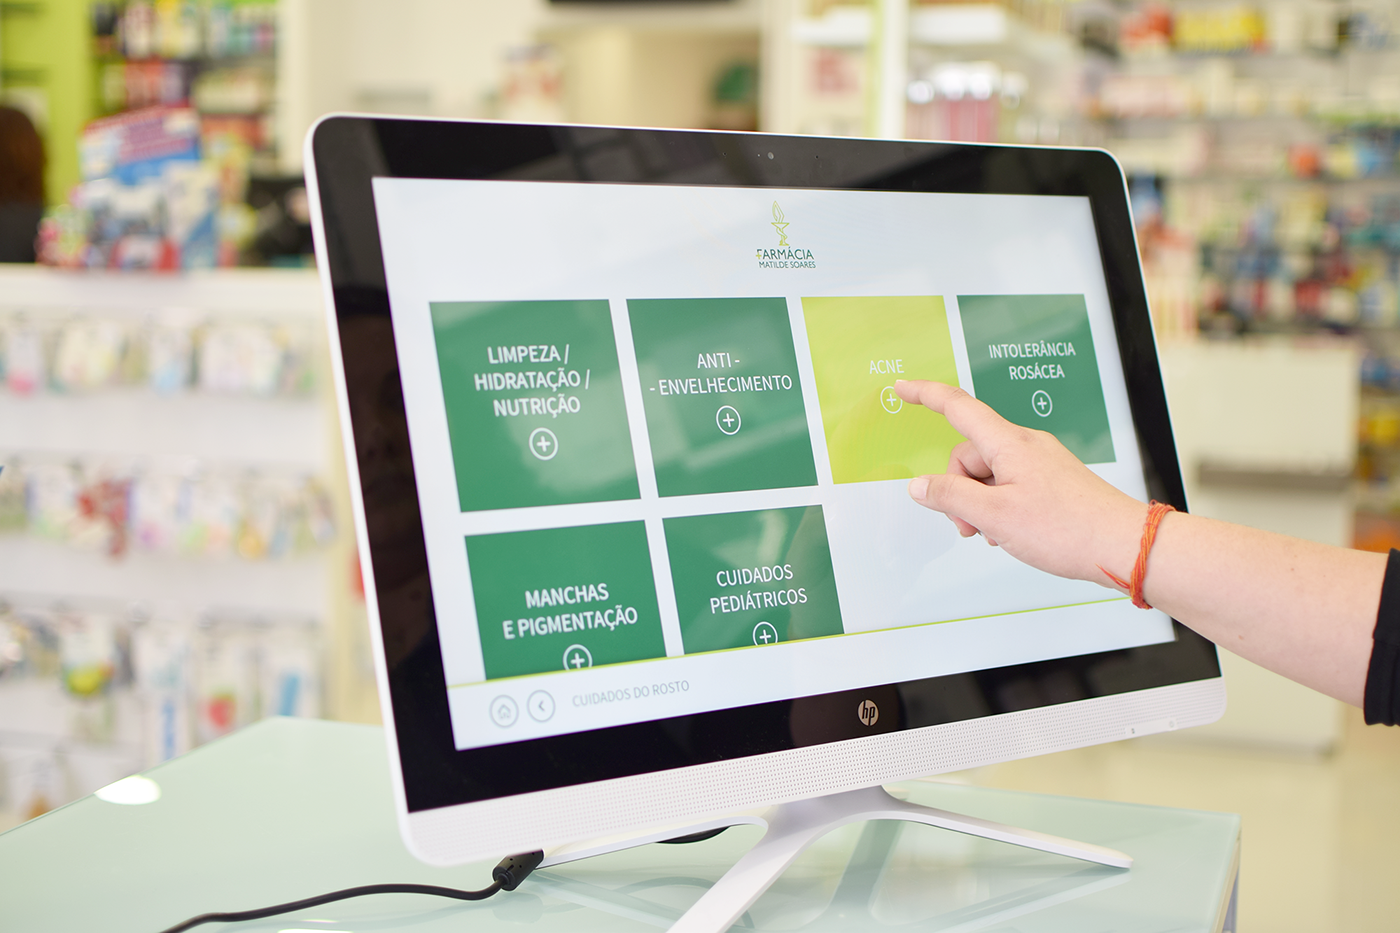 responsive website Kiosk pharmacy green icons